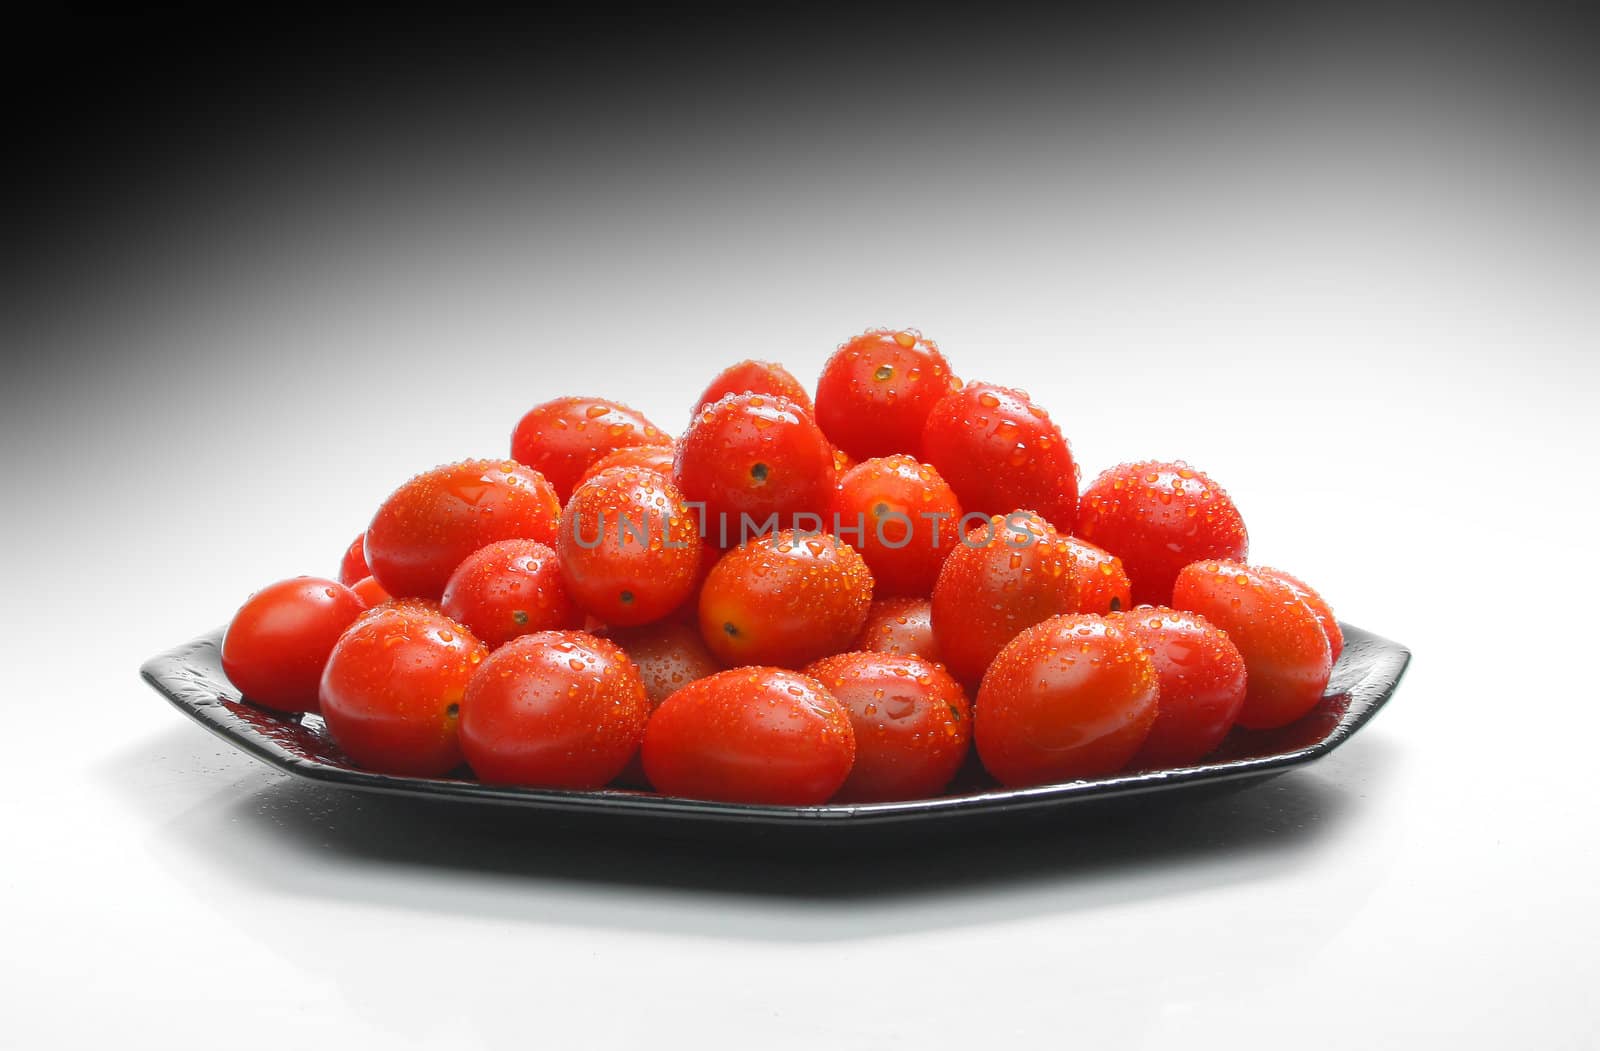 Cherry tomatoes by Erdosain